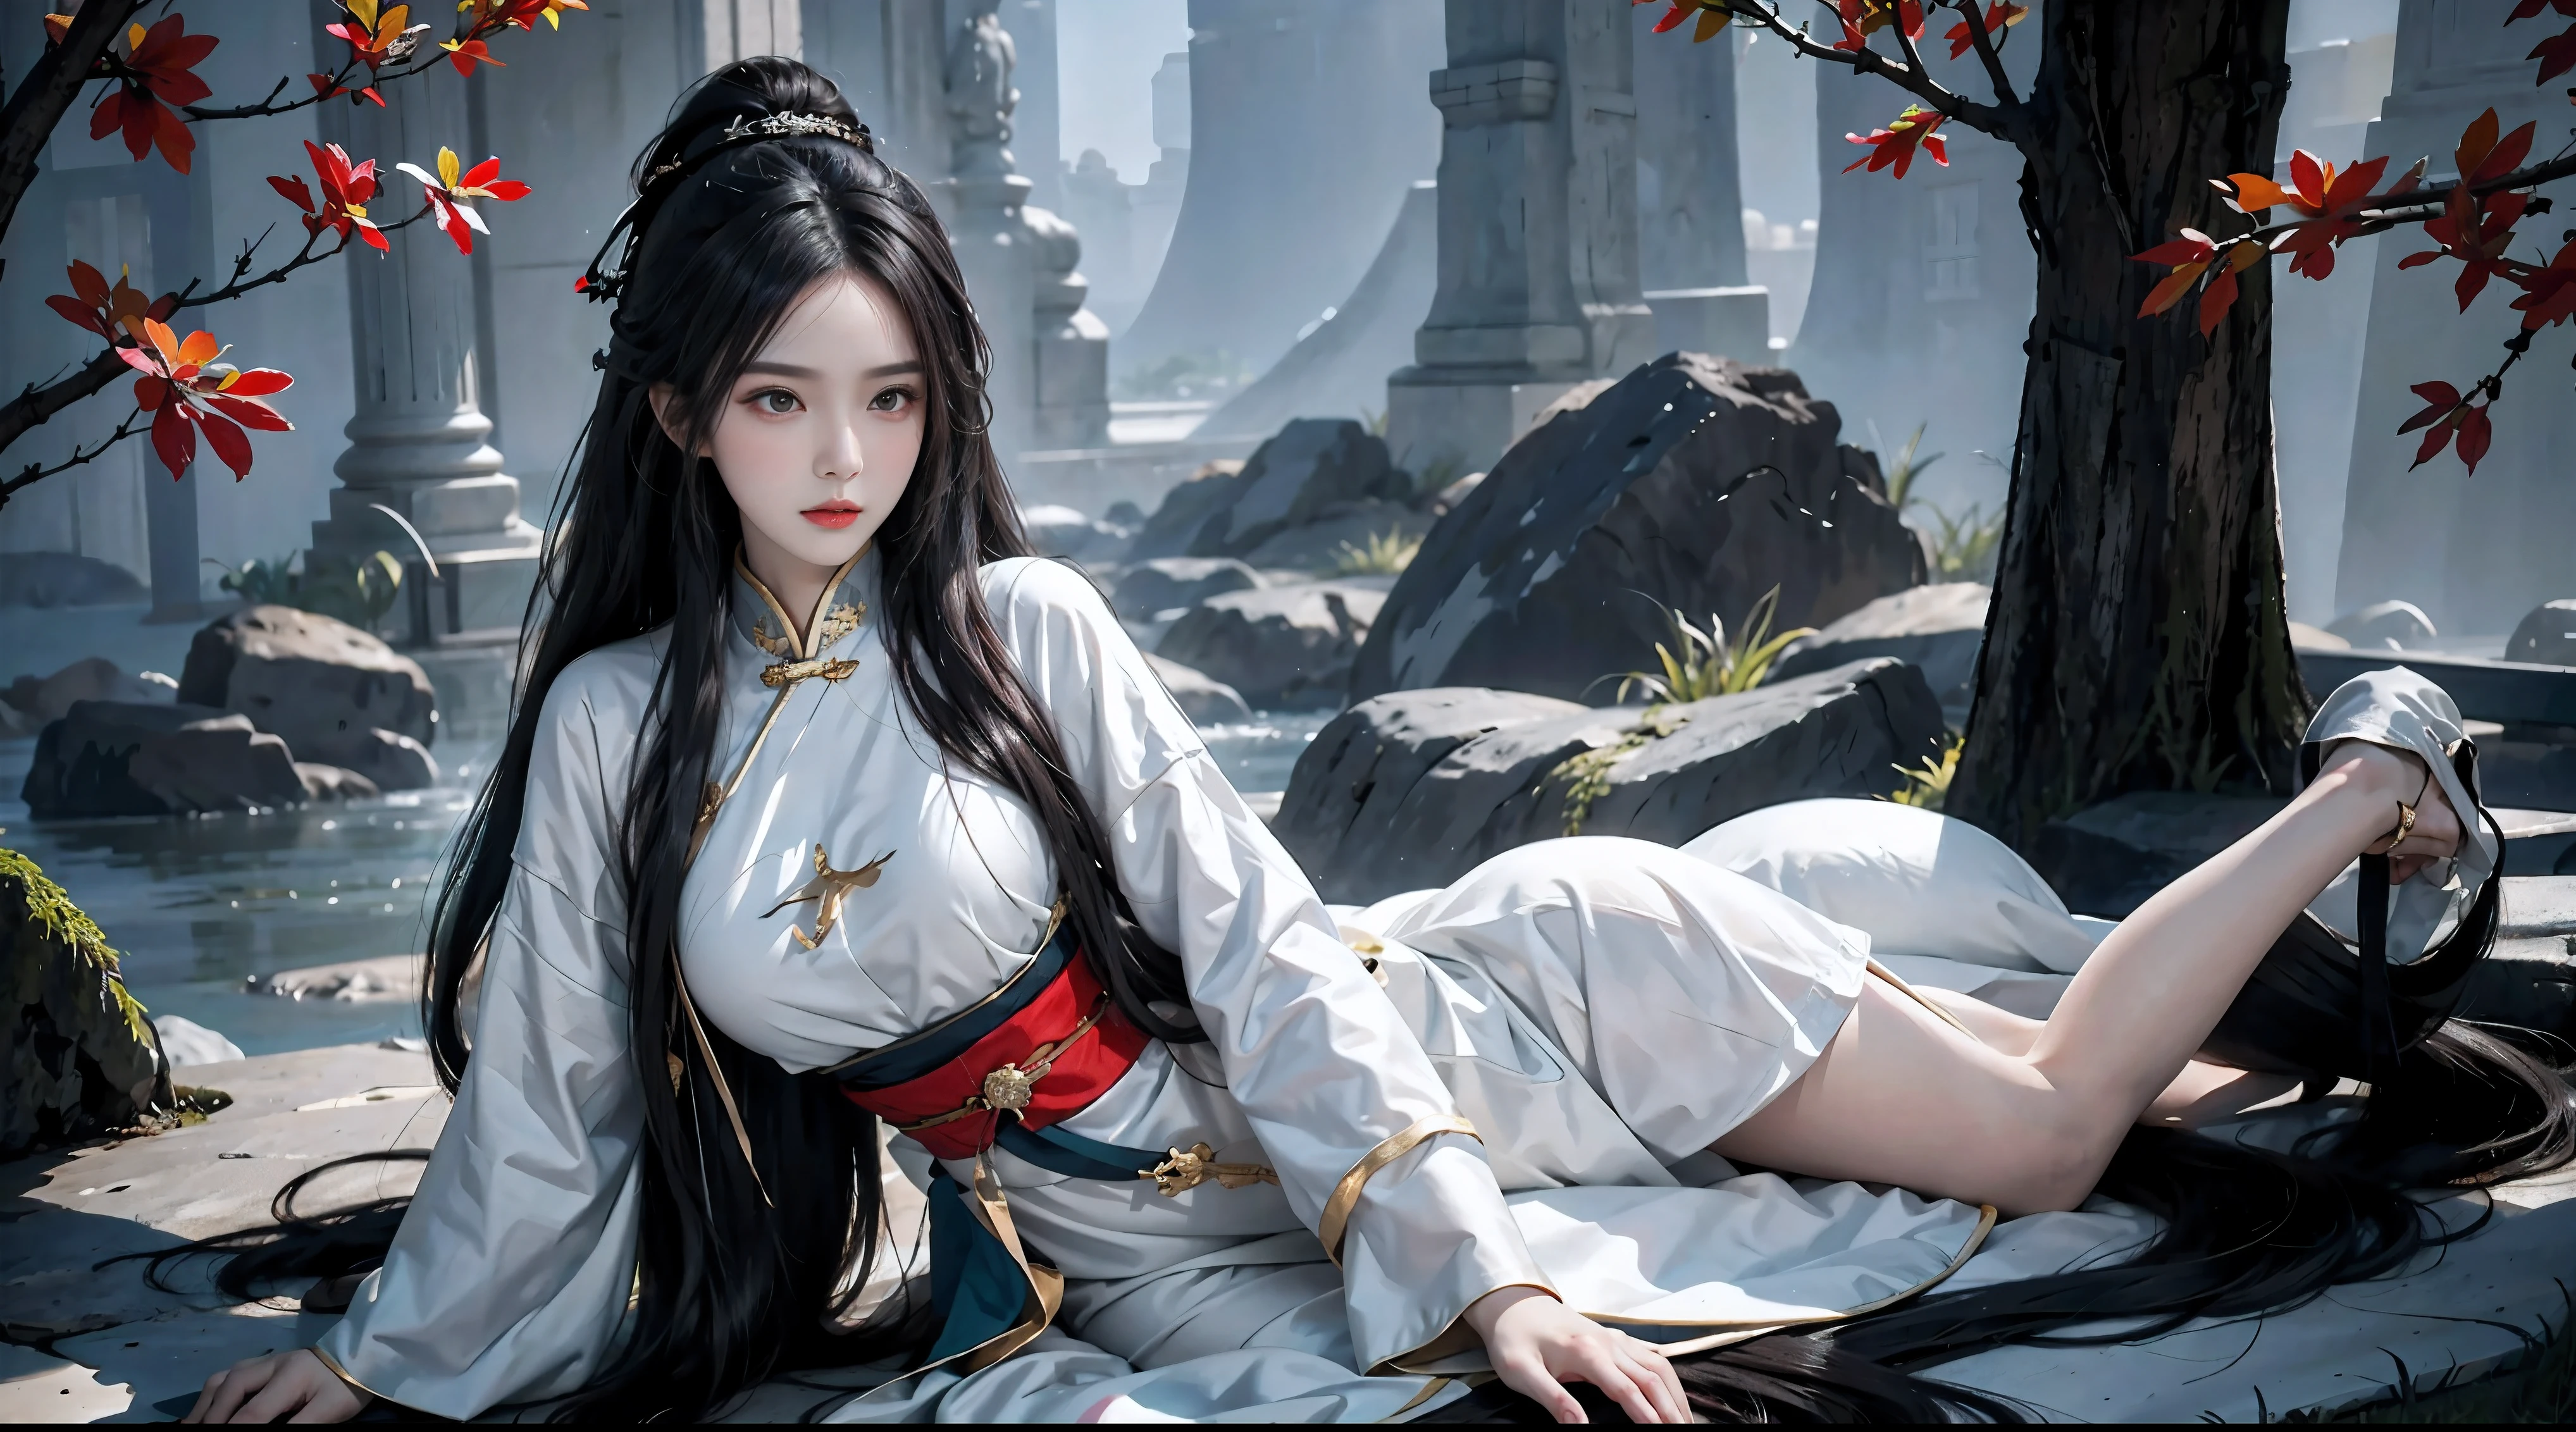 واقعيا, دقة عالية, 1 امرأة ترتدي الهانفو, وحيد,  شعر بني اللون, شعر رمادي طويل，الملابس الخيالية الصينية